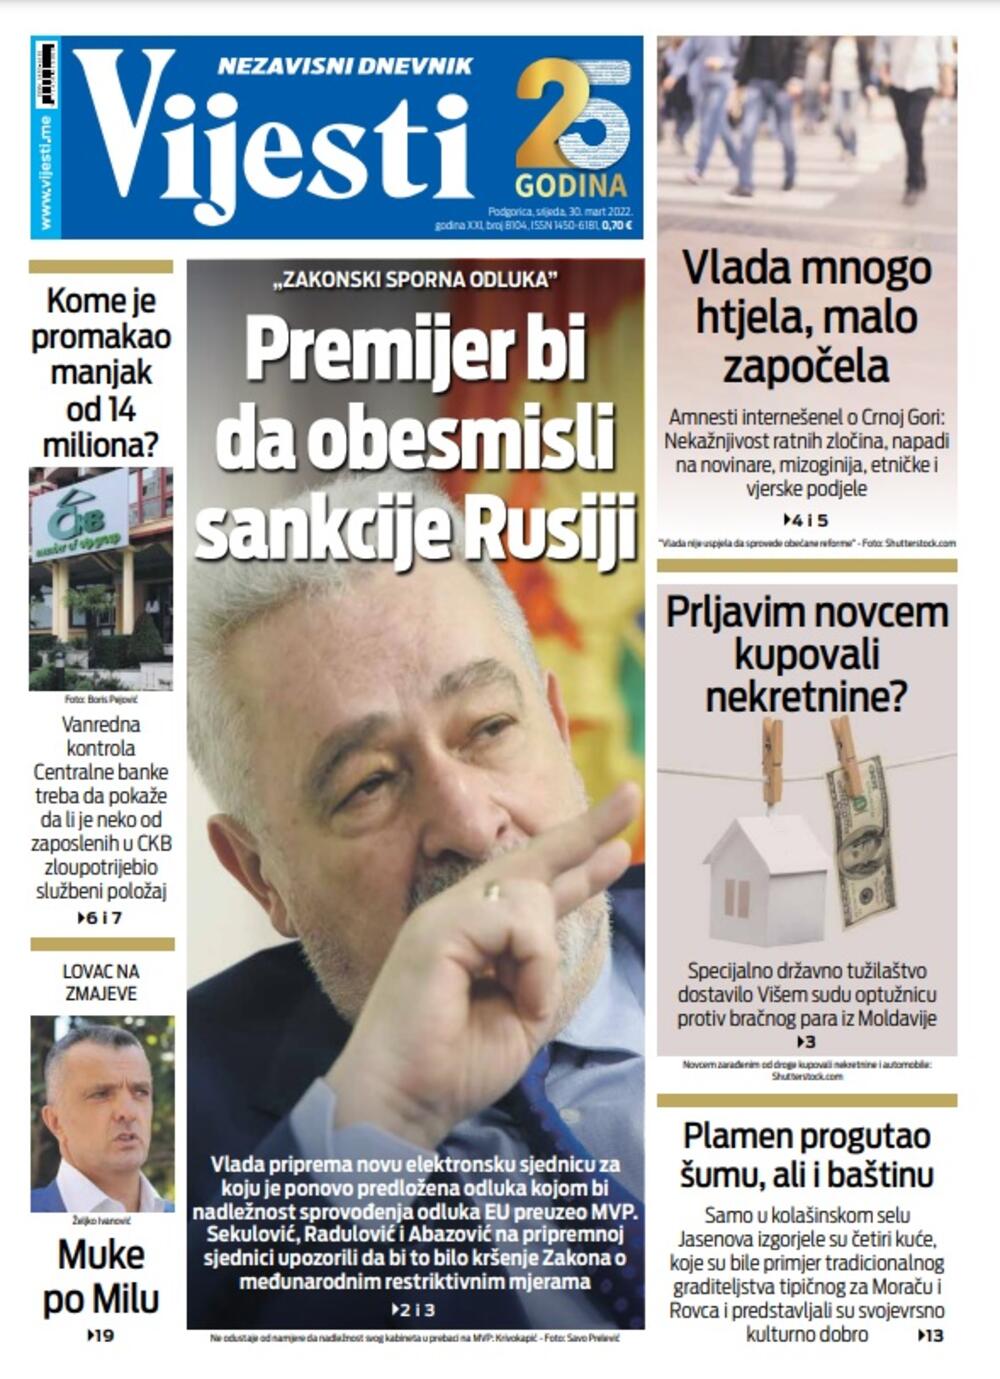 Naslovna strana "Vijesti" za 30. mart 2022., Foto: Vijesti